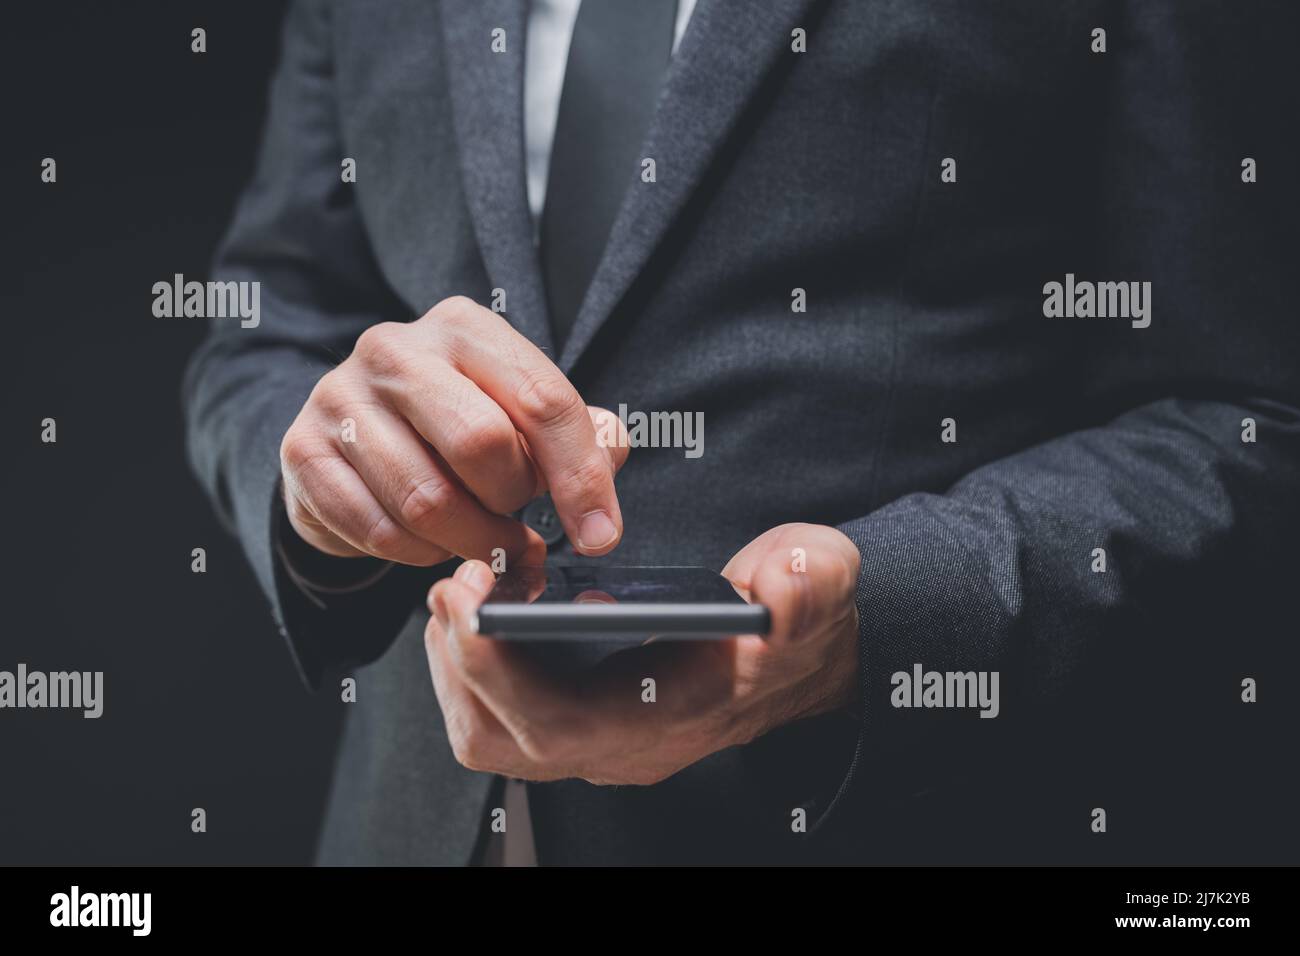 Un homme d'affaires élégant en costume gris foncé utilise un smartphone mobile, un gros plan de la saisie manuelle de messages texte, une mise au point sélective Banque D'Images